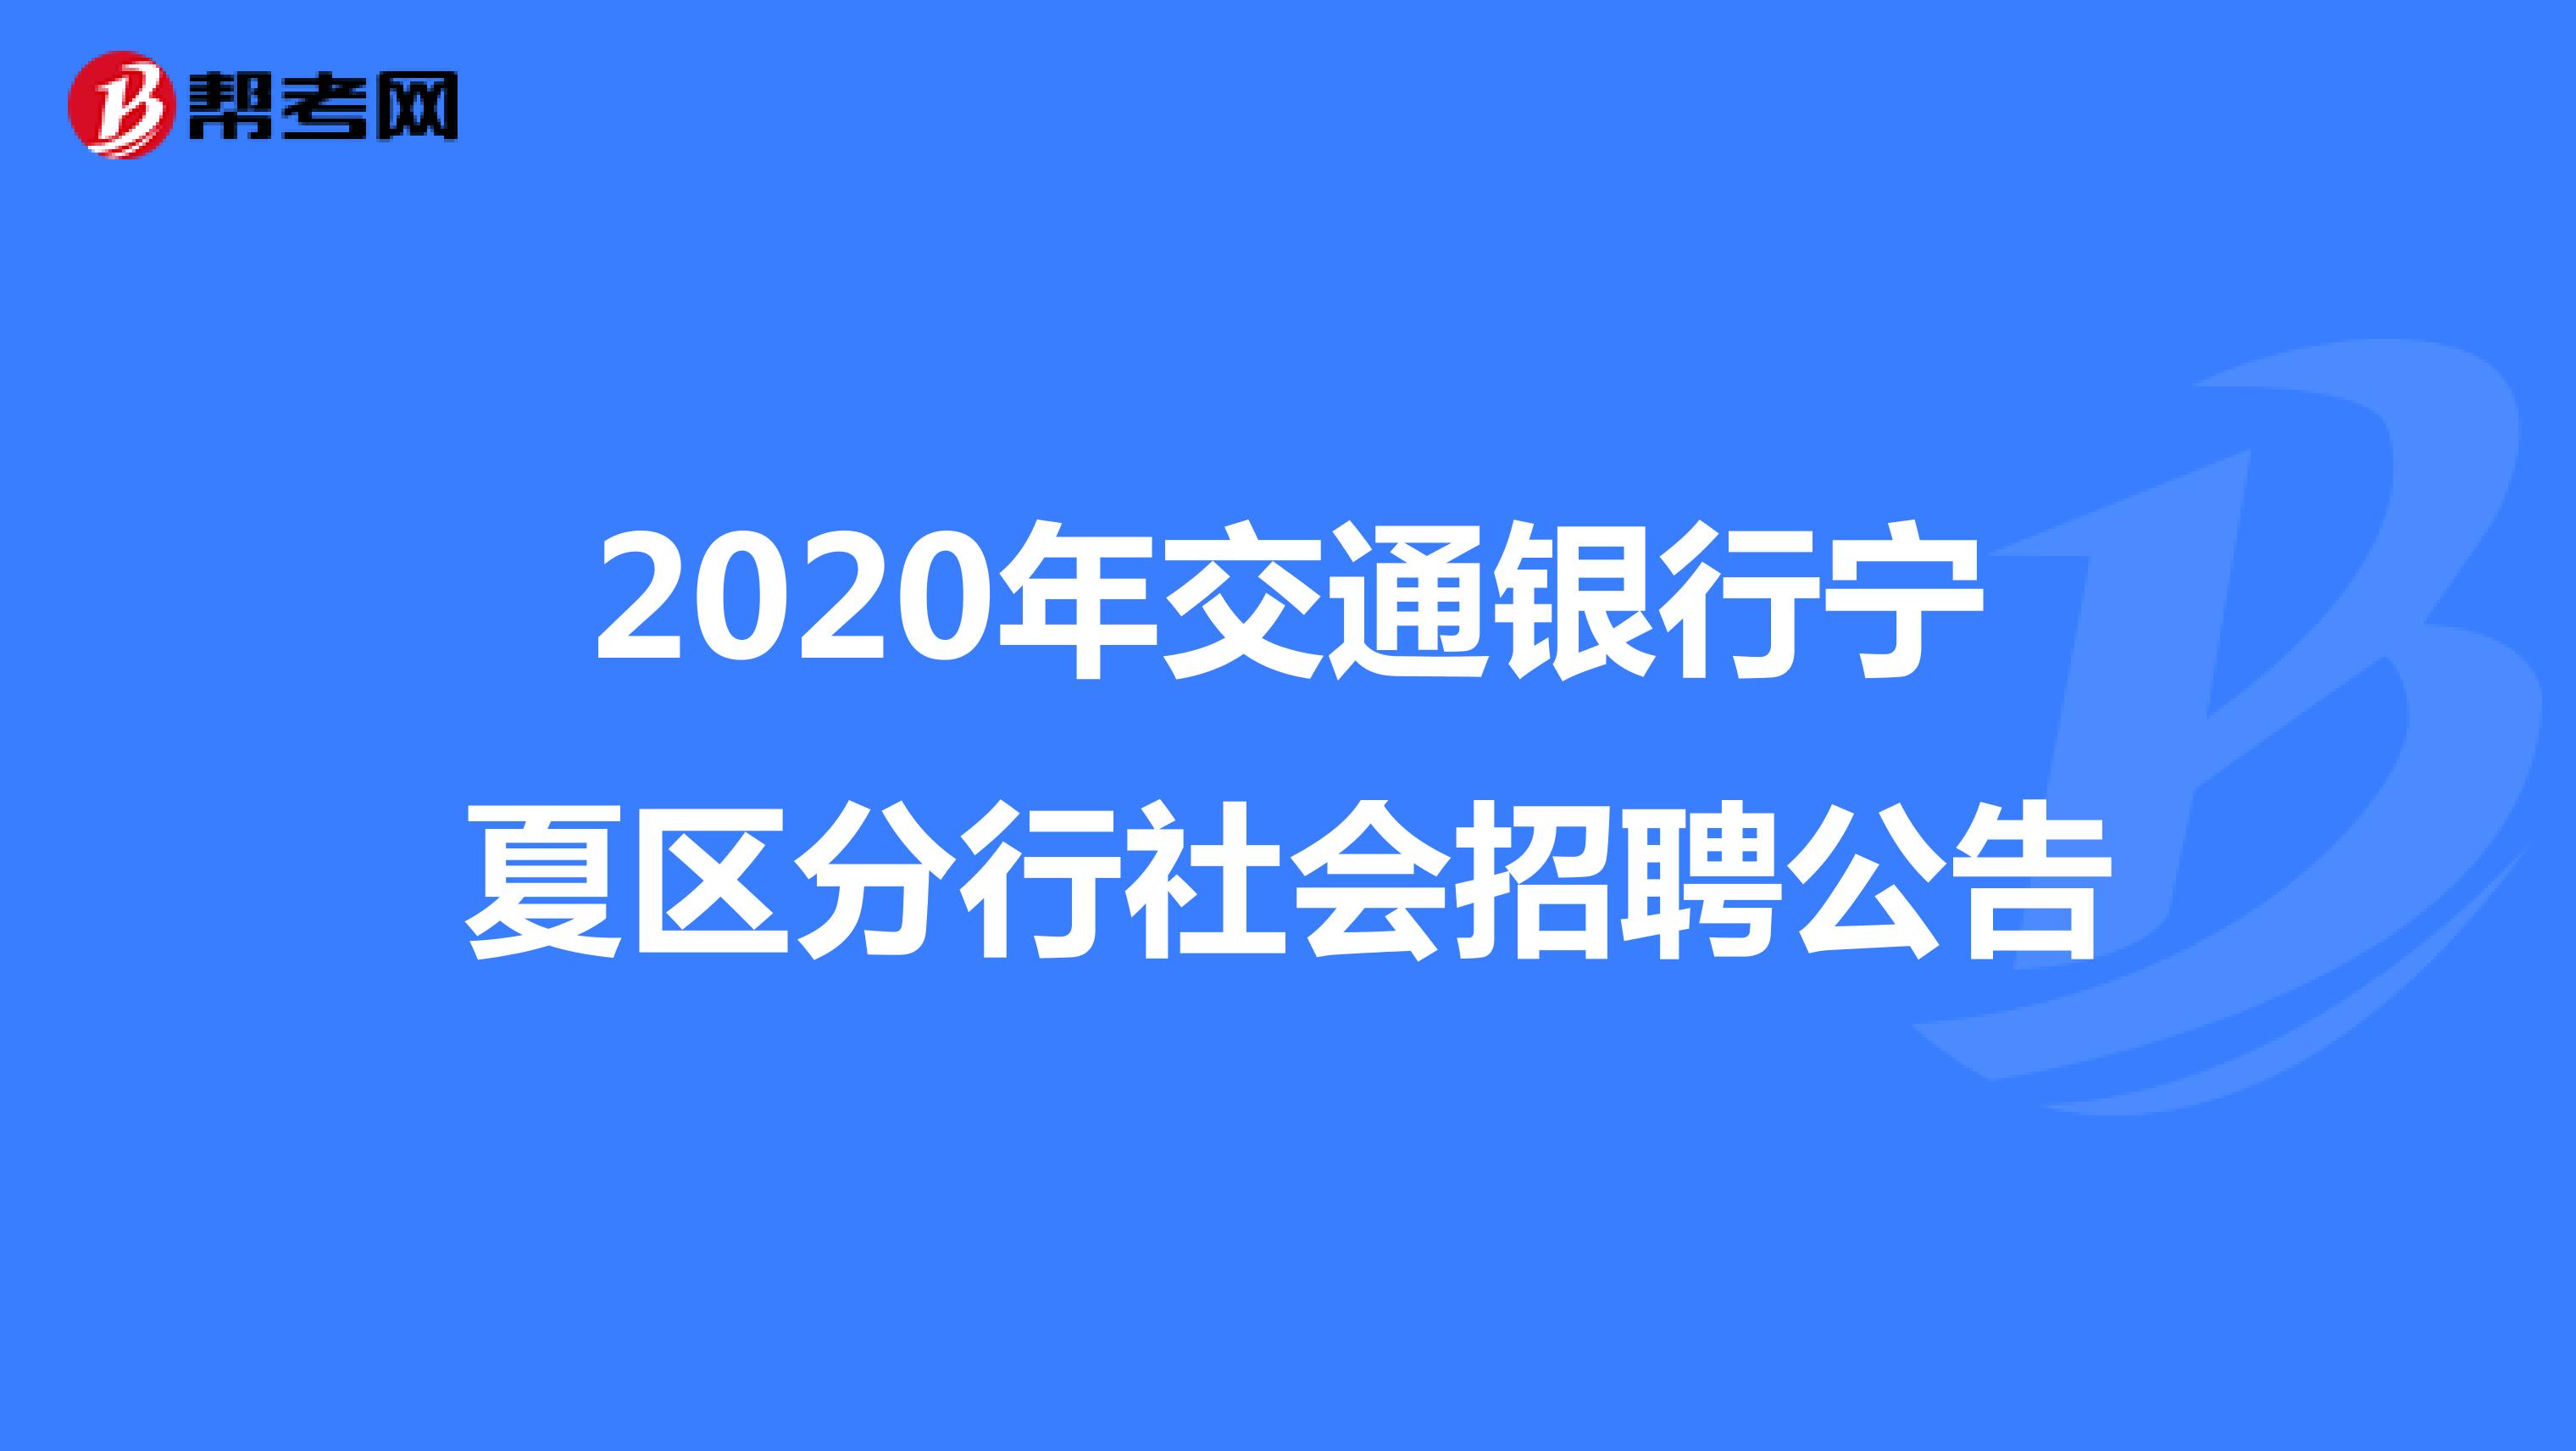 2020年交通银行宁夏区分行社会招聘公告